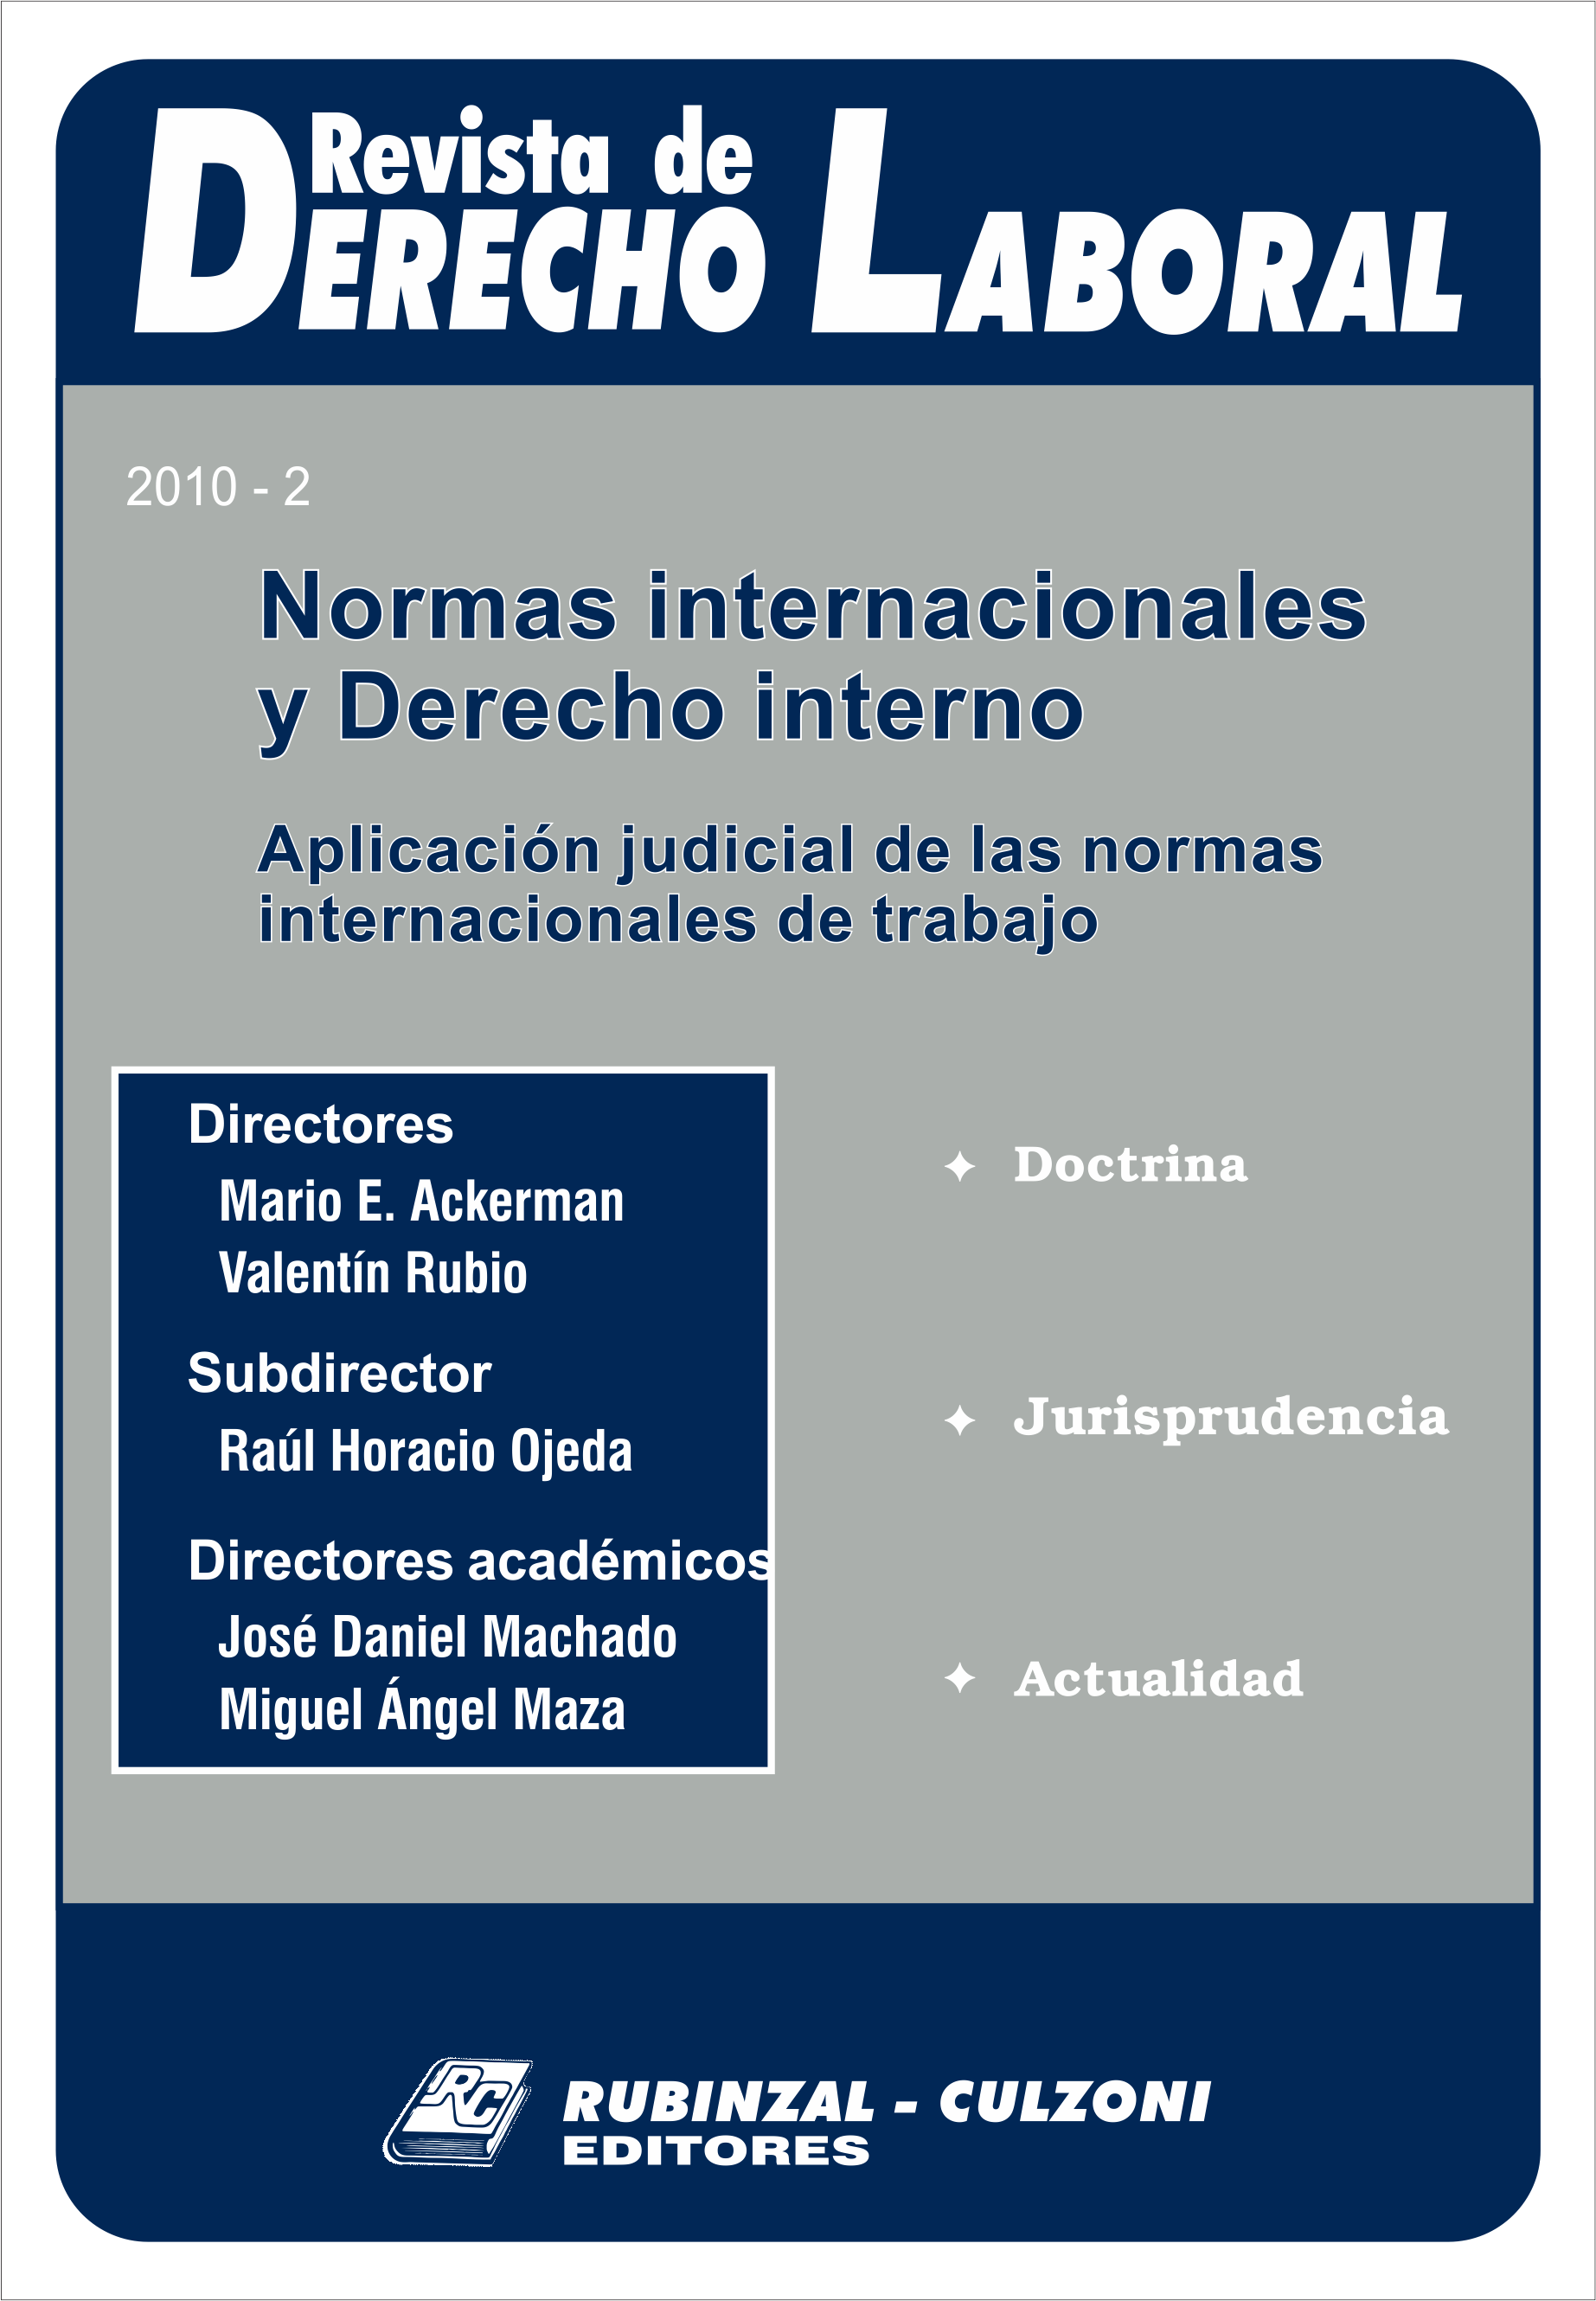 Revista de Derecho Laboral Actualidad - Año 2010 - 2.